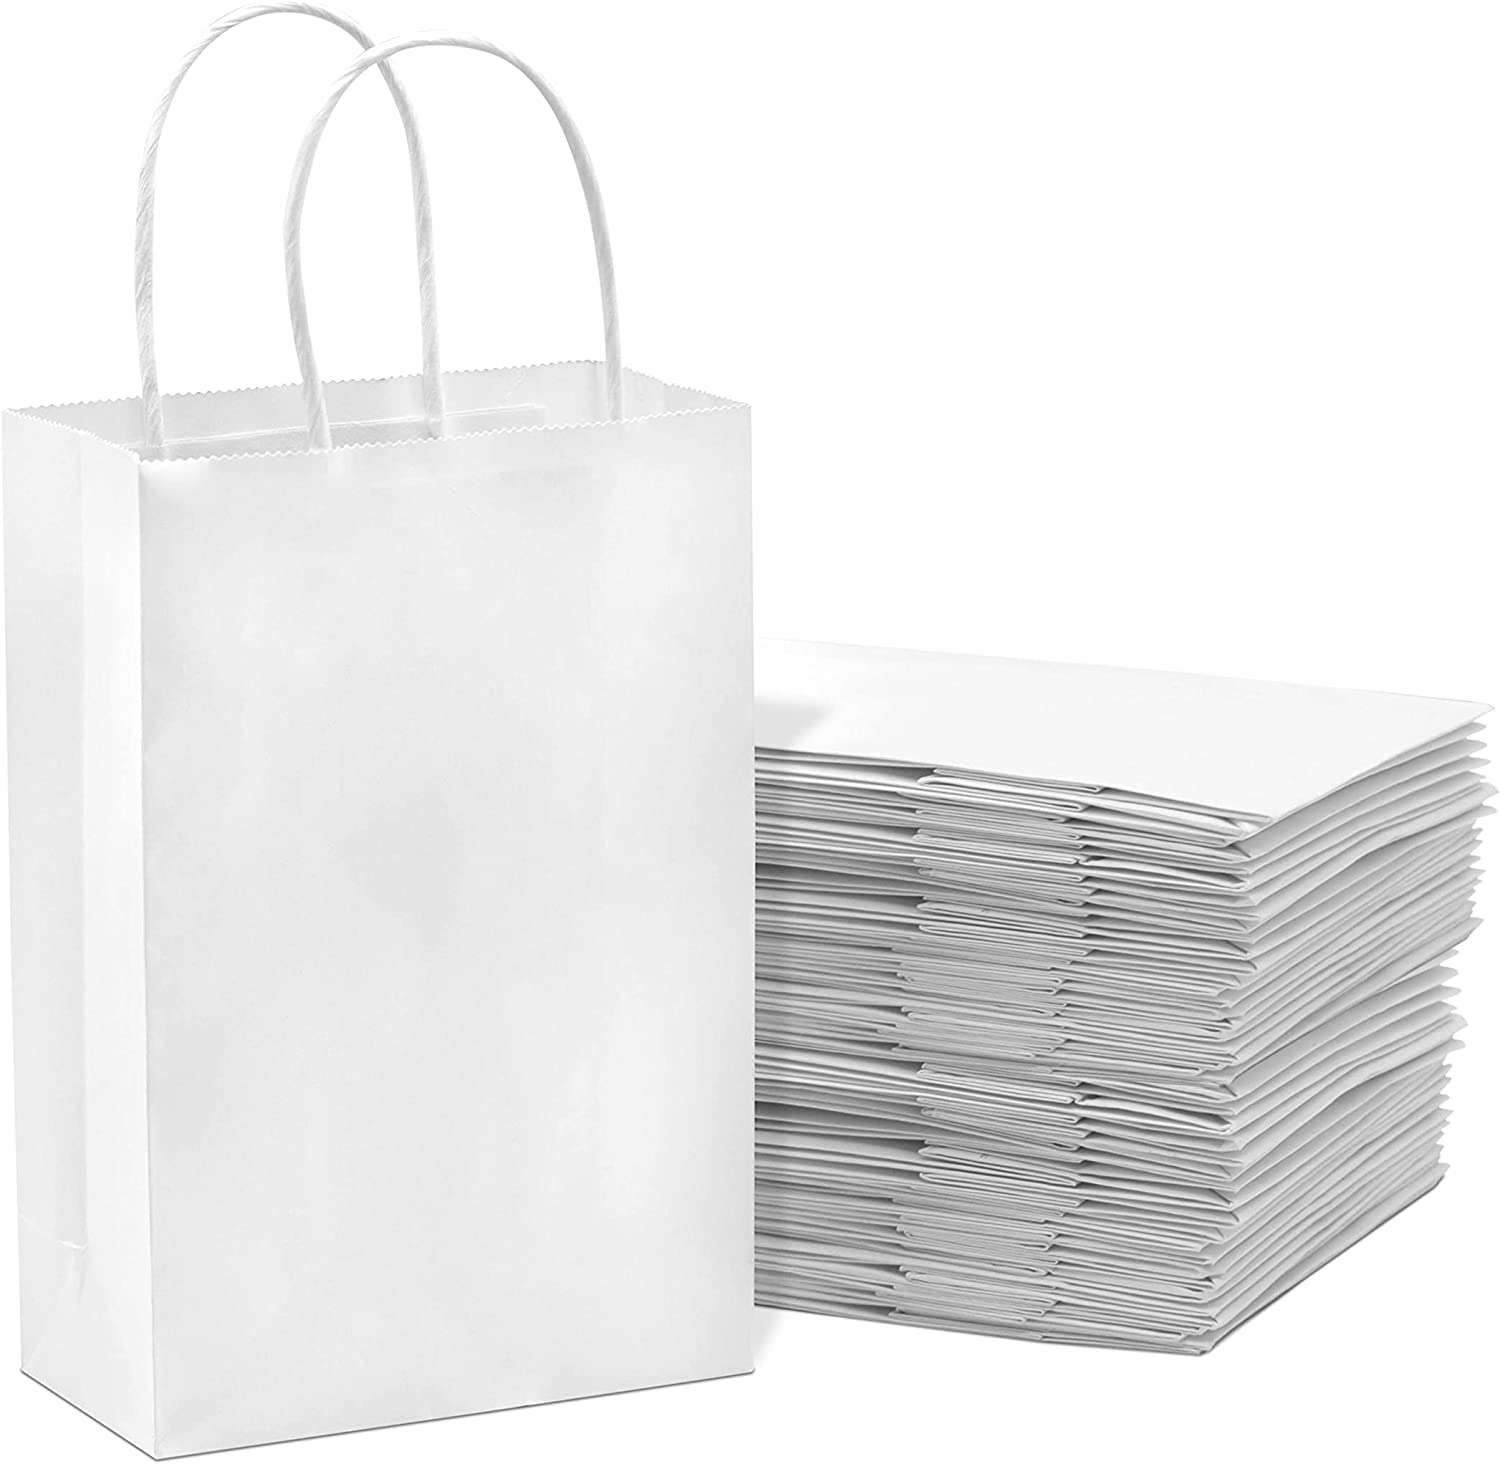 White plain paper bags 50 PCS